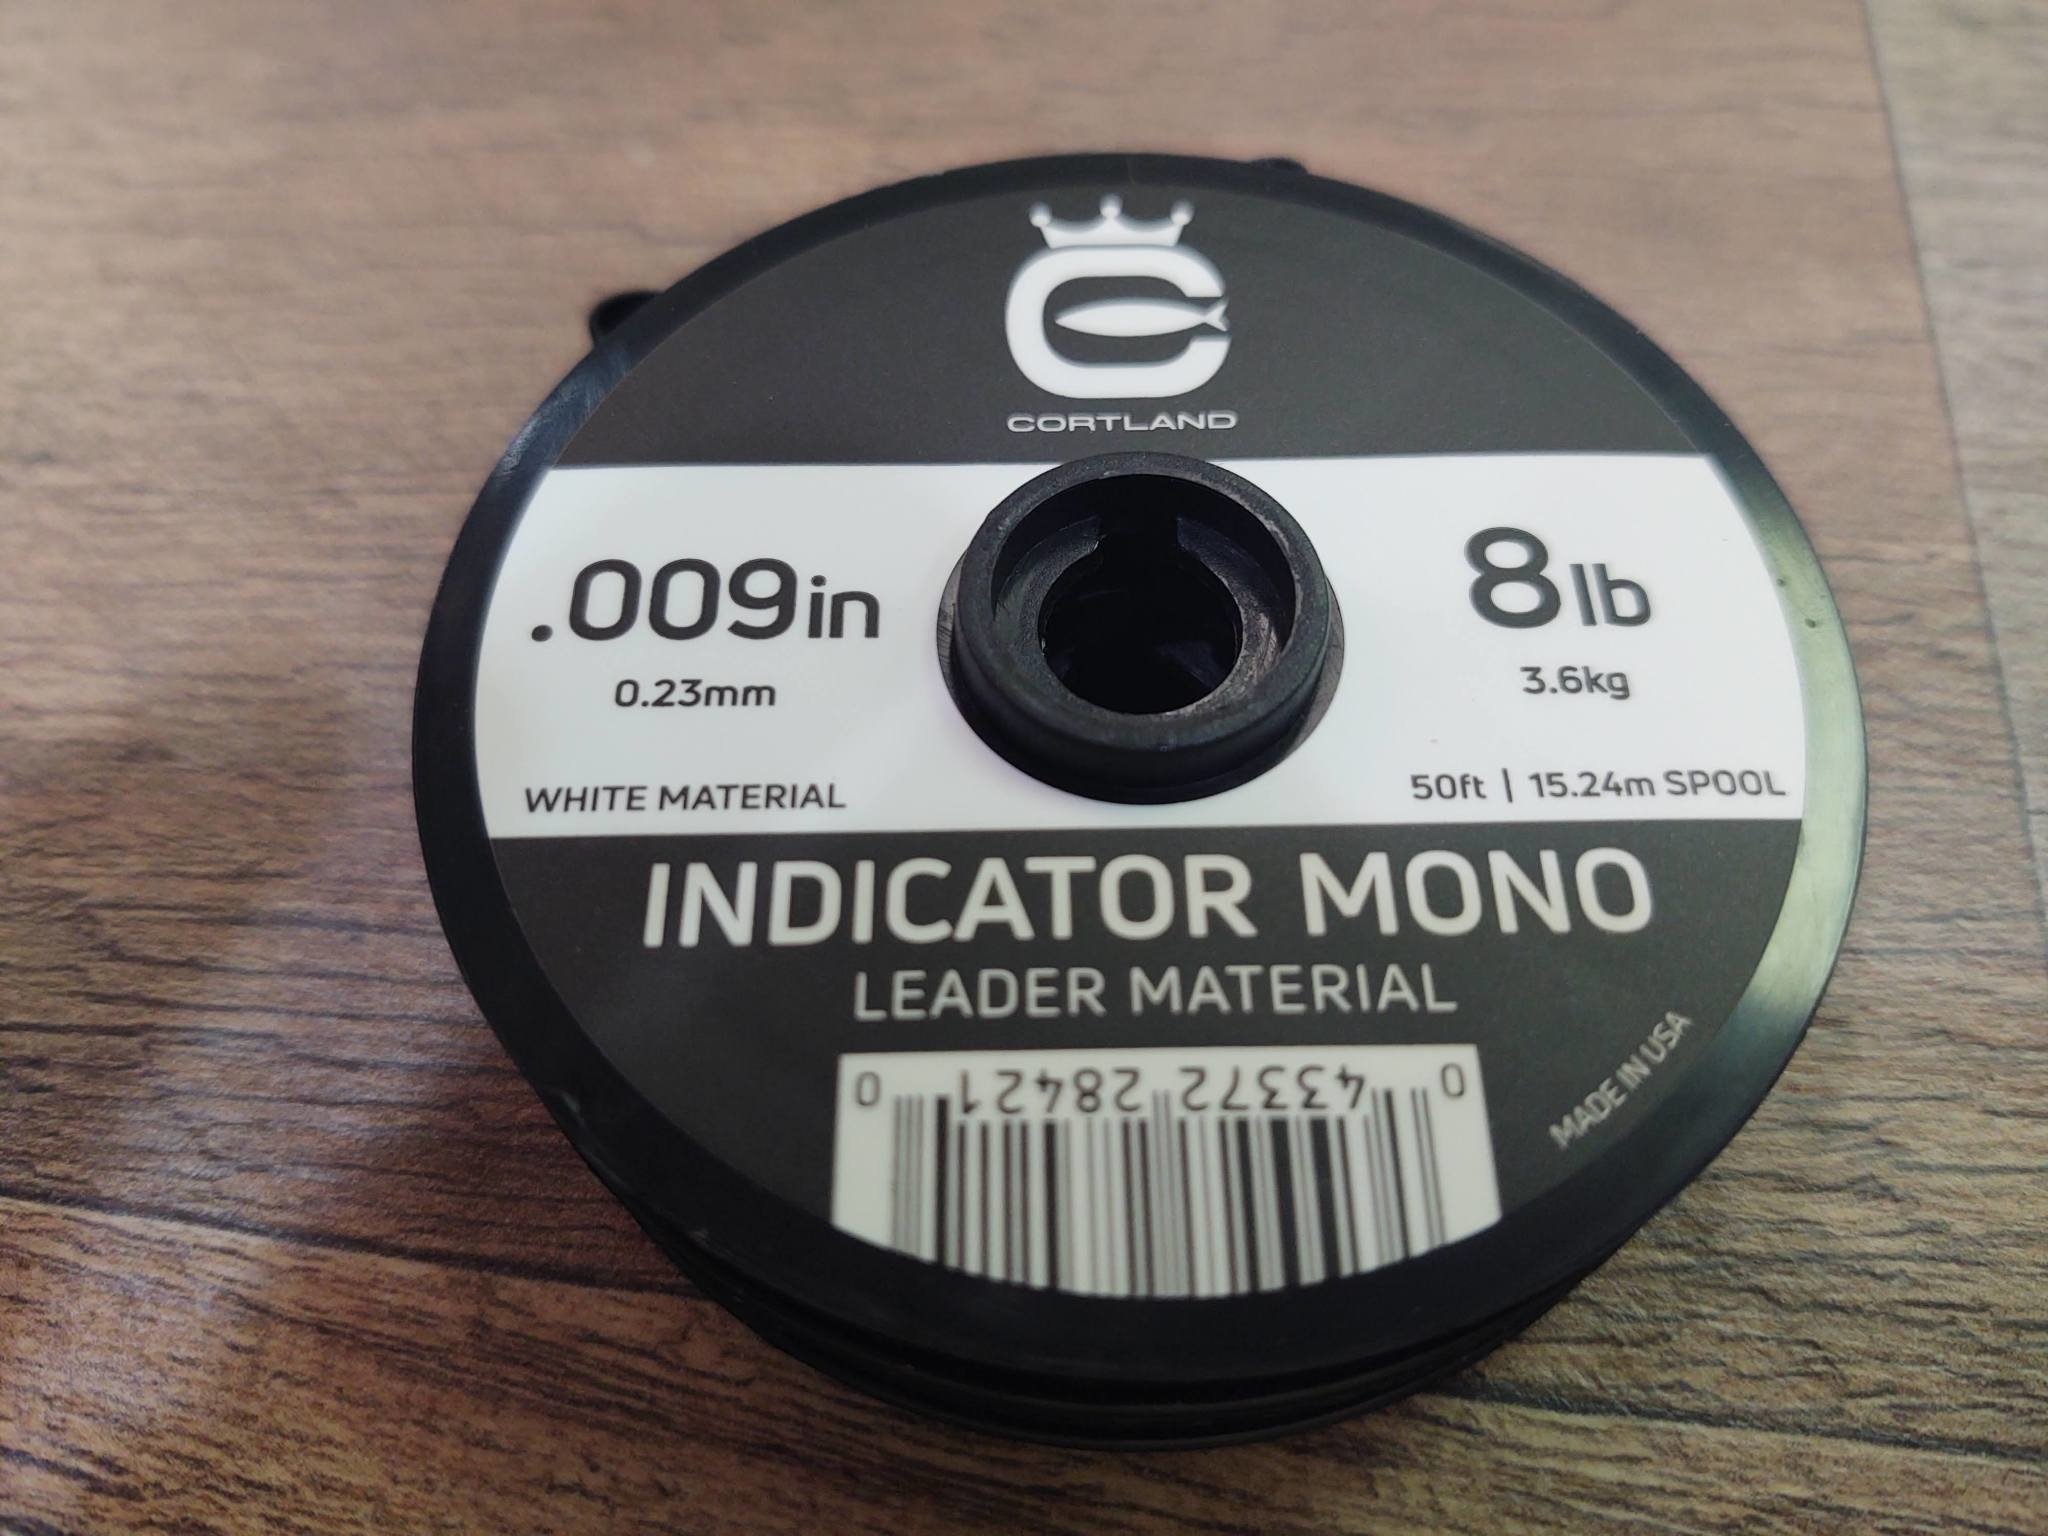 Cortland Indicator Mono 50ft